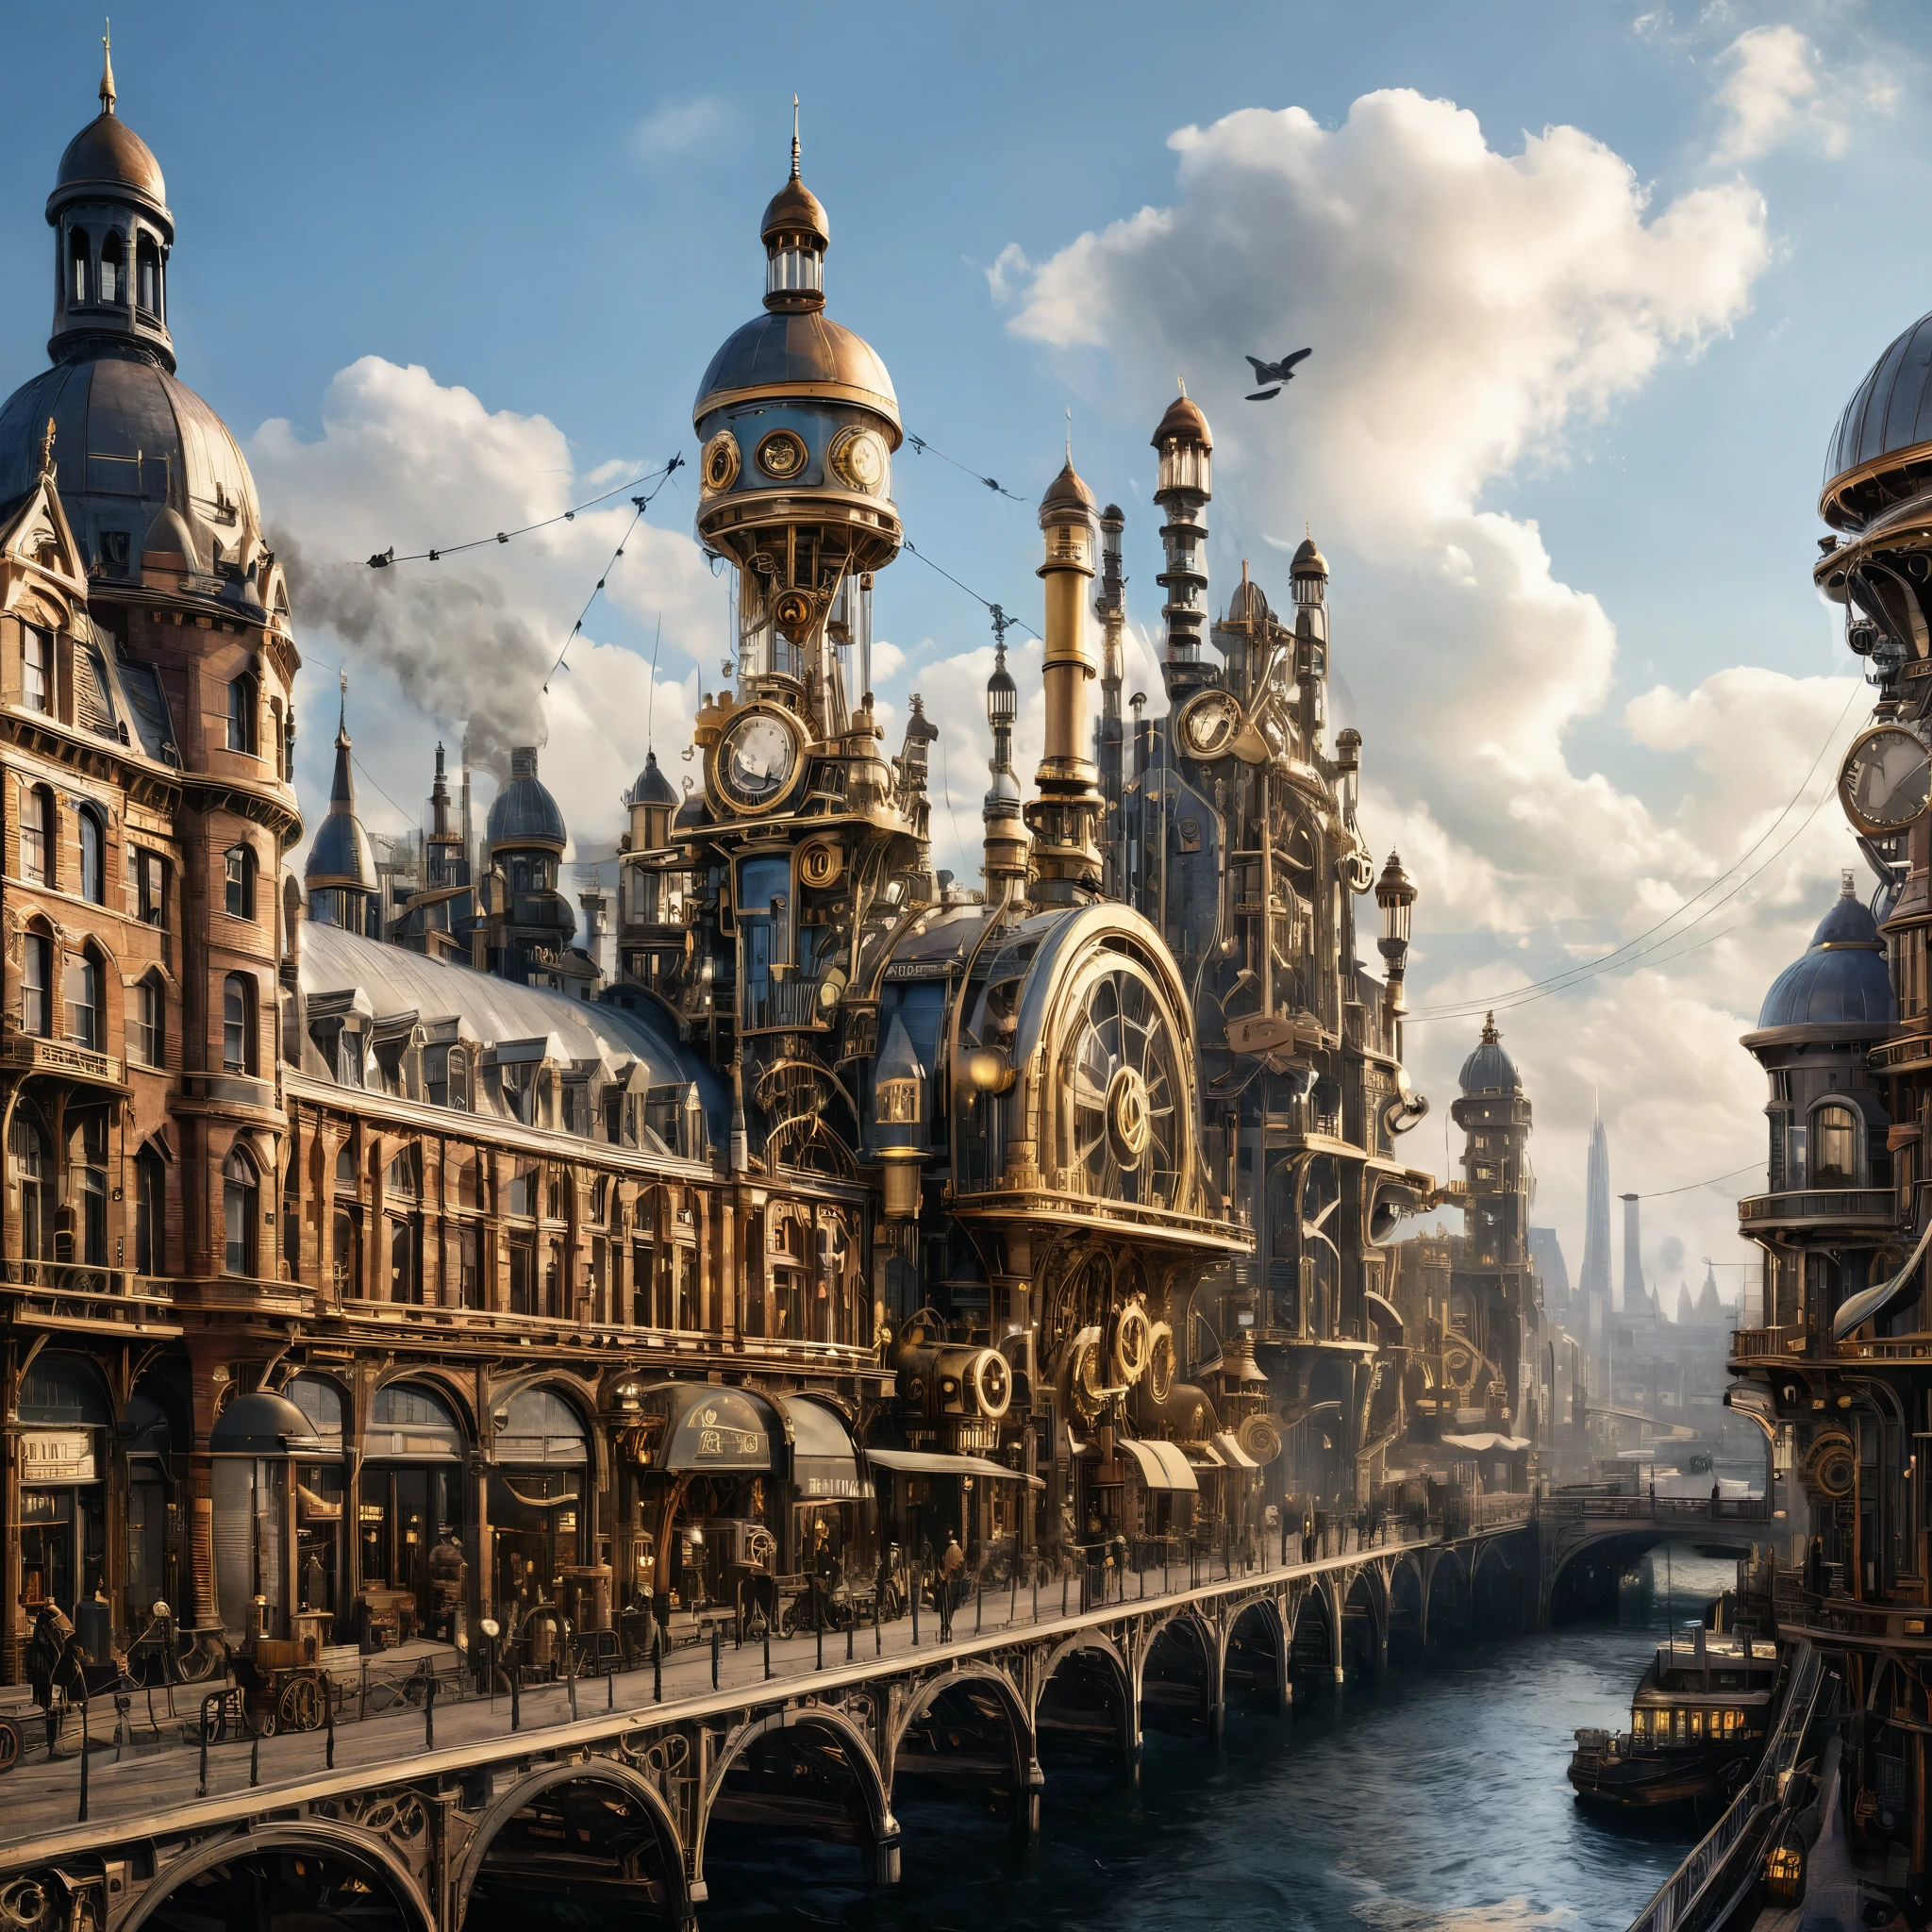 منظر المدينة مع المباني والتكنولوجيا على طراز Steampunk, الجمع بين جماليات العصر الفيكتوري والآلات المتقدمة, واقعية, المحسنة رقميا.